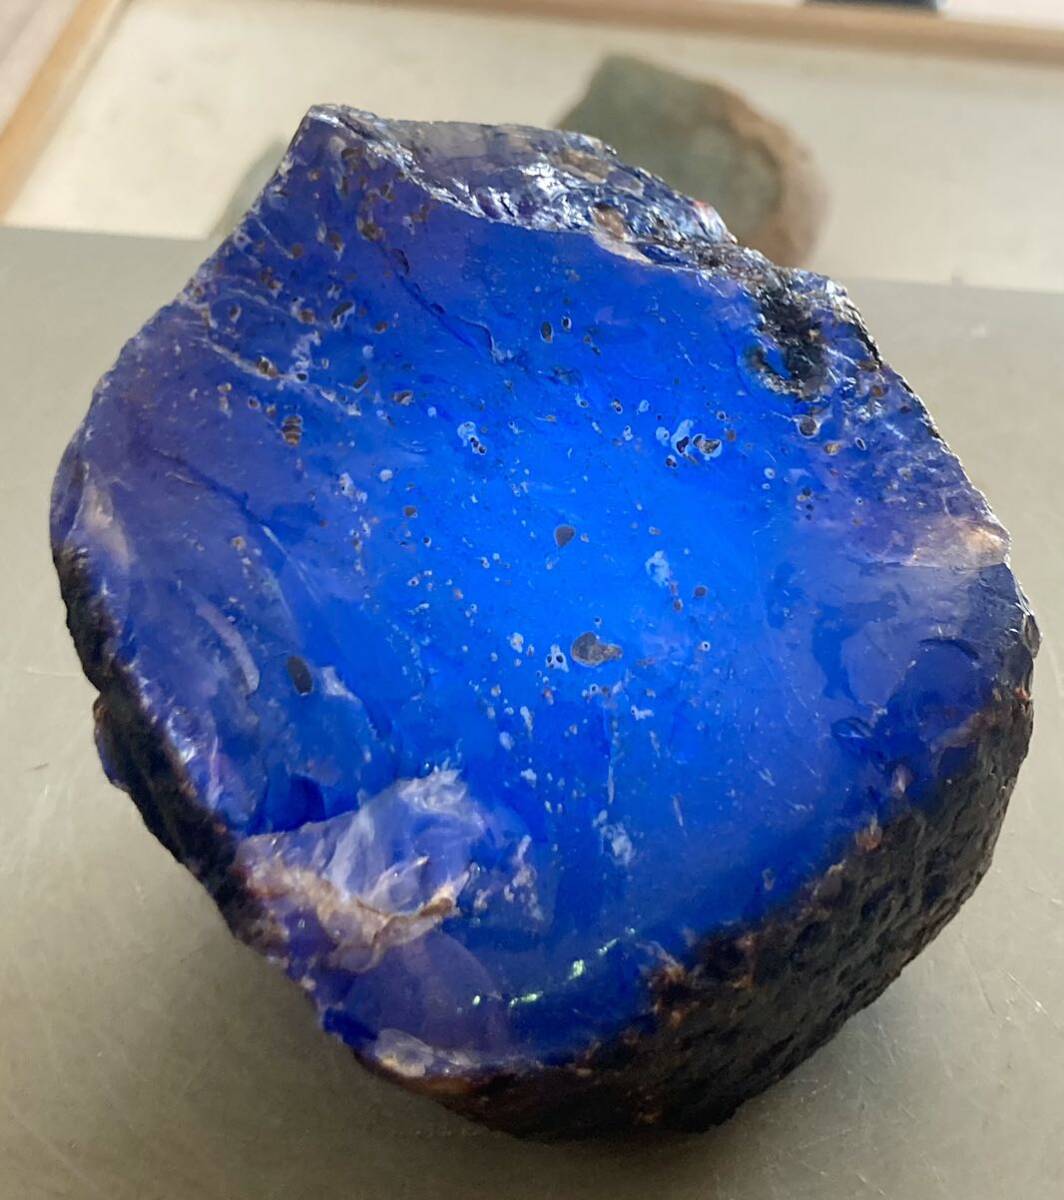  Indonesia sma тигр остров производство . камень натуральный голубой янтарь необогащённая руда 340g красивый ^ ^